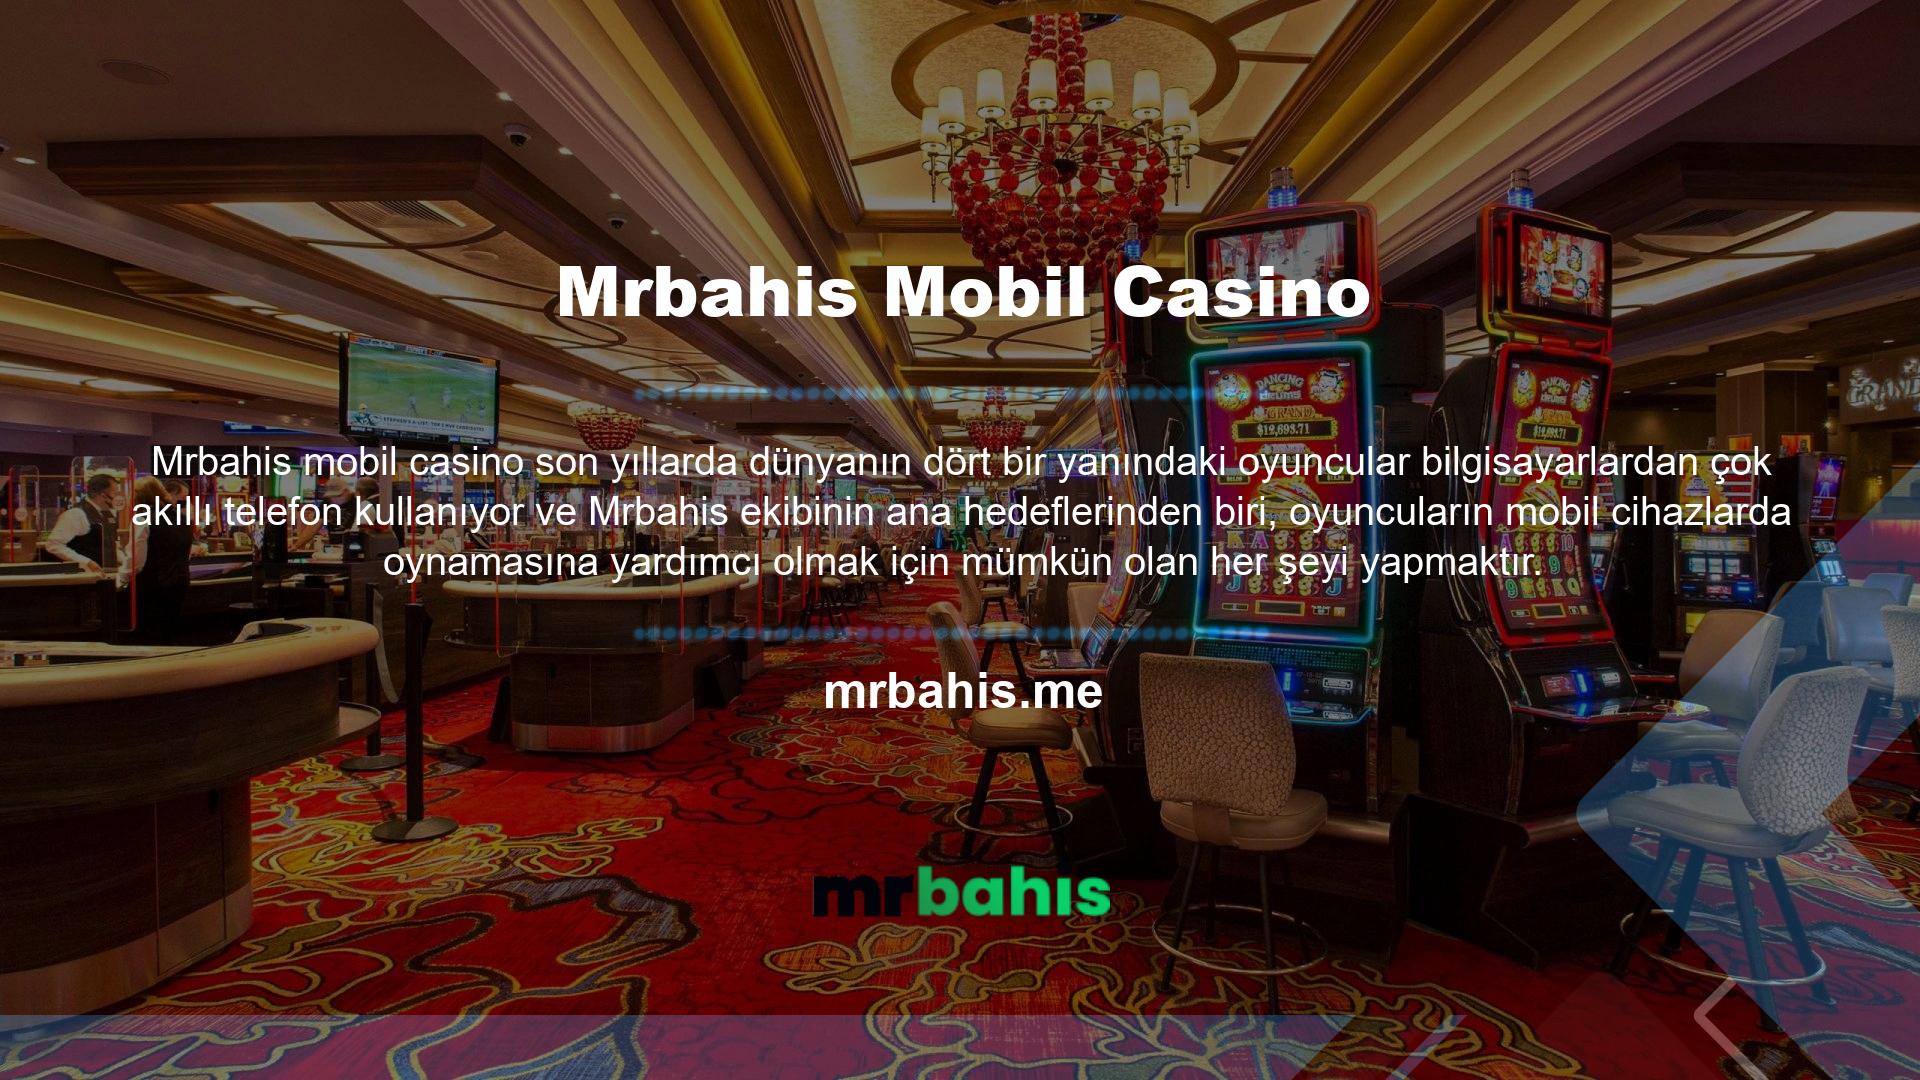 Artık Mrbahis Casino hakkında her şeyi bildiğinize göre, mobil cihazınızı kullanarak bahis şirketinin casinosunda oynamaya devam edebilirsiniz